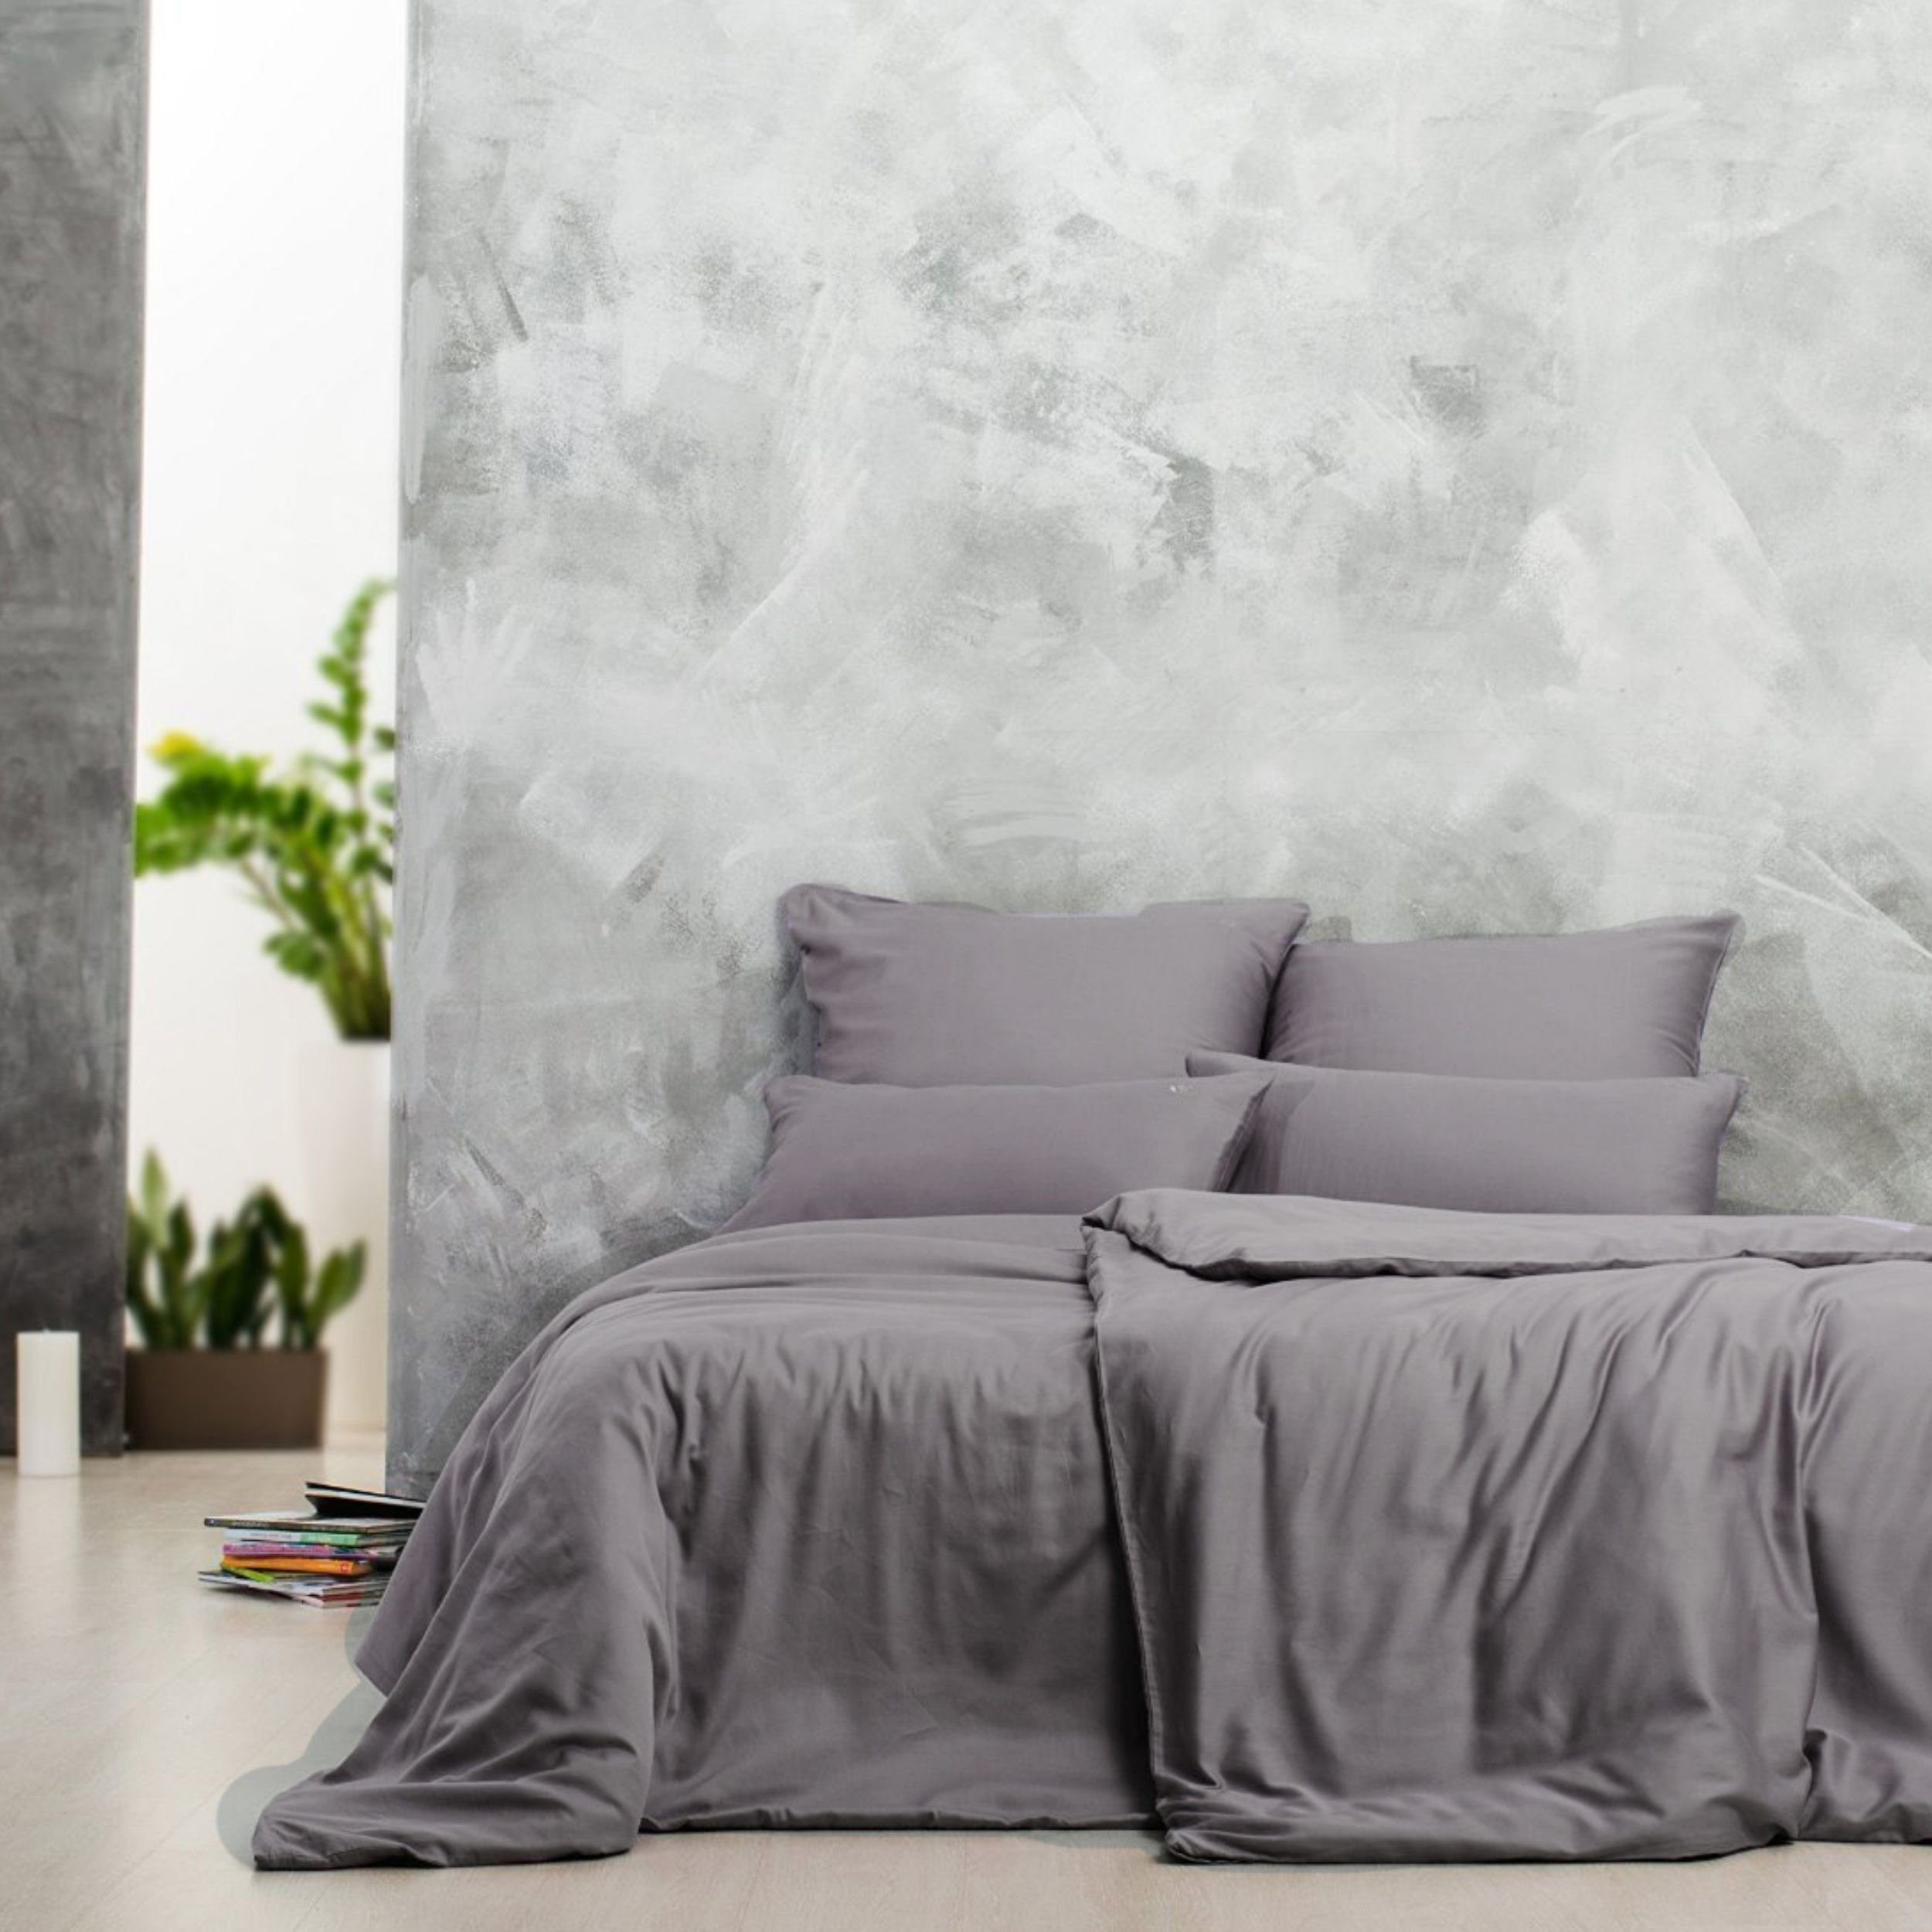 Bettwäsche aus 100% Mako-Satin Baumwolle Lilac-Grey, SEI Design, Mako Satin, 1 teilig, gesticktes Logo